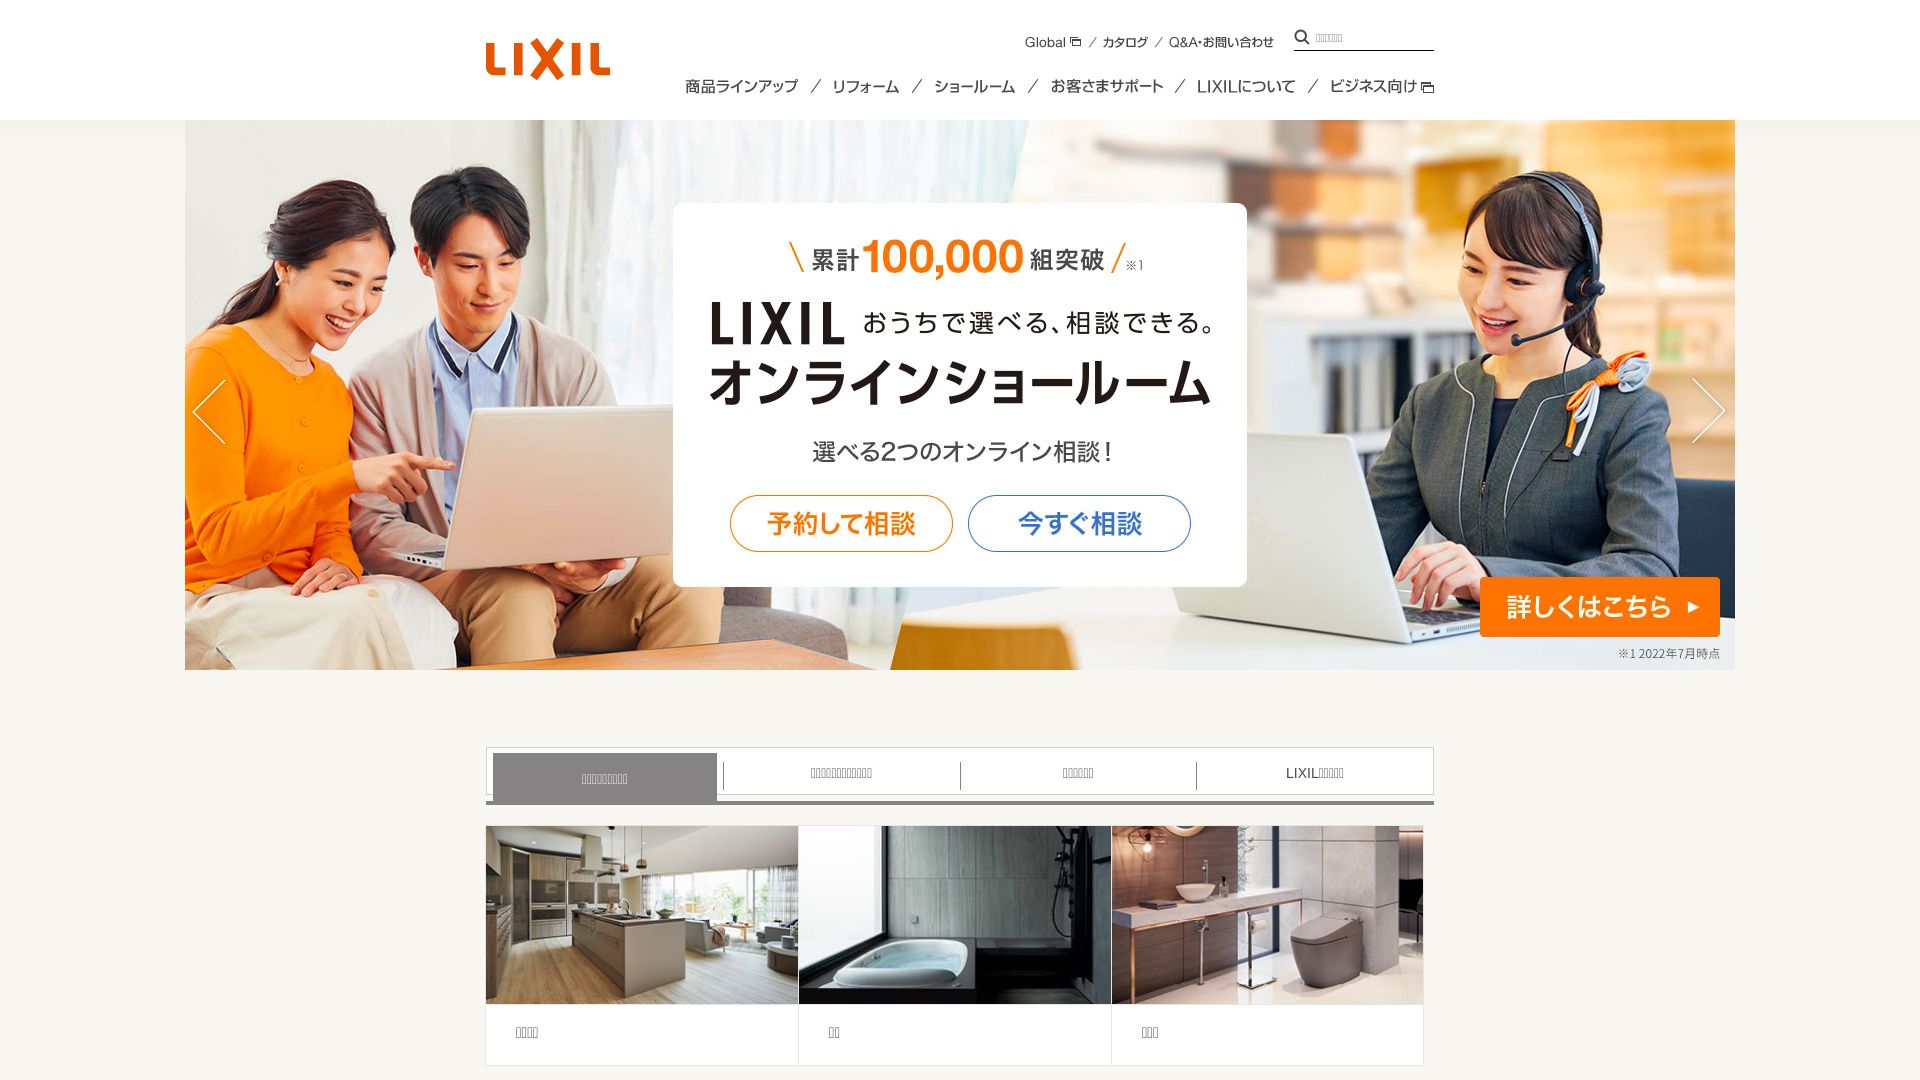 Статус сайта lixil.co.jp ОНЛАЙН